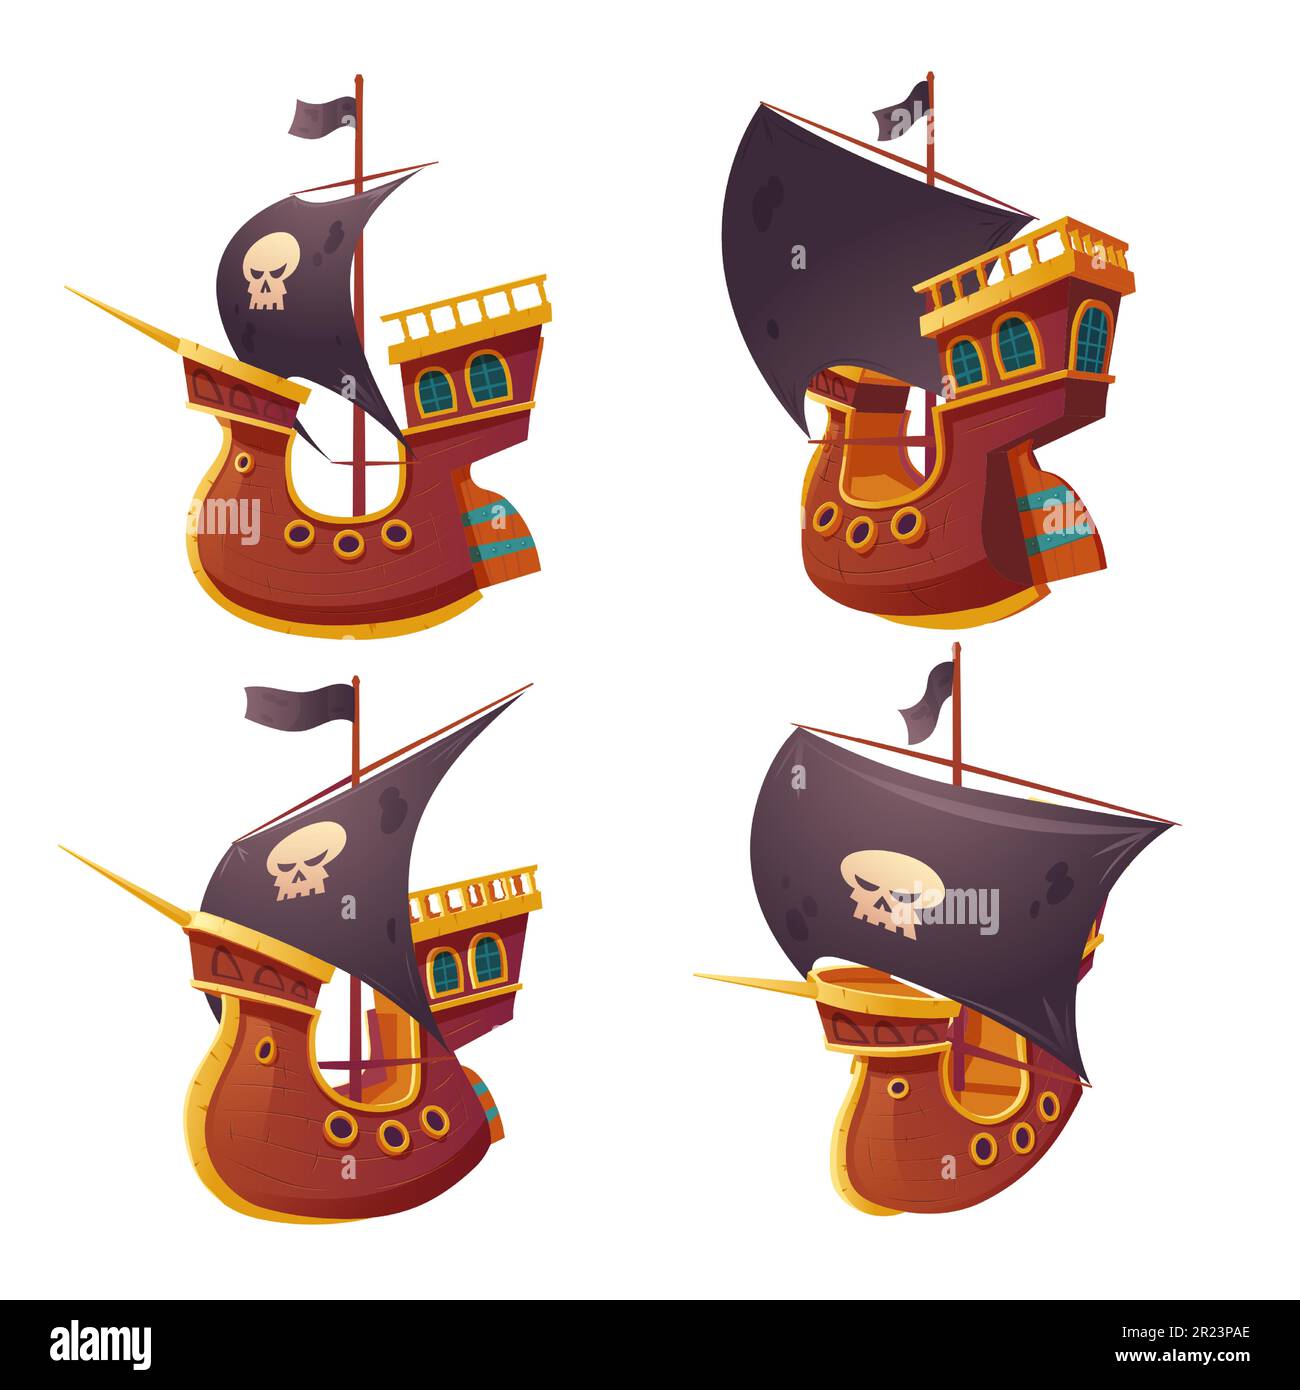 Piratenschiff isoliert auf weißem Hintergrund. Holzboot mit schwarzen Segeln, Kanonenlöchern und Segelplätzen. Corvette oder Fregatte mit Seeräuberflagge, Schädel und Knochen. Altes Schlachtschiff, Barge-Cartoon-Vektor Stock Vektor